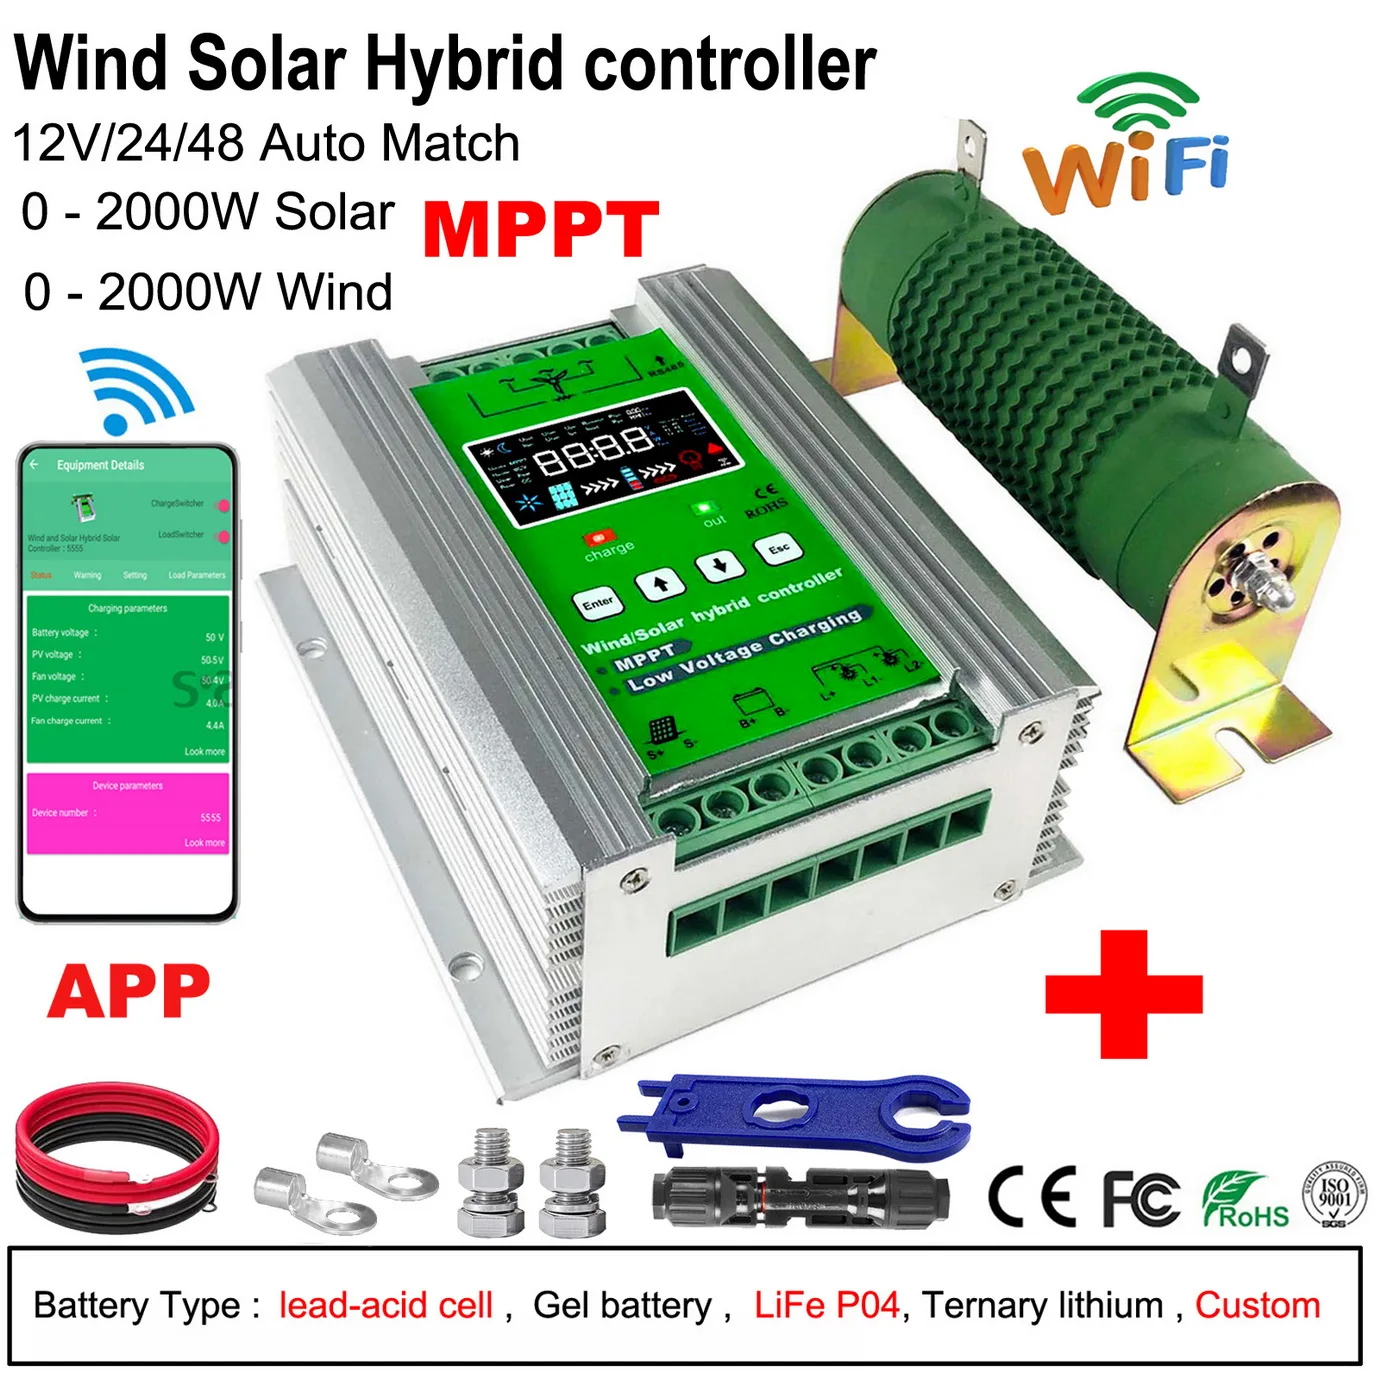 

4000W 3000W 12V 24V 48V MPPT Wind Solar Hybrid Controller 80A 160A Solar Panel Wind Generator Charger Regulator with Dump Load